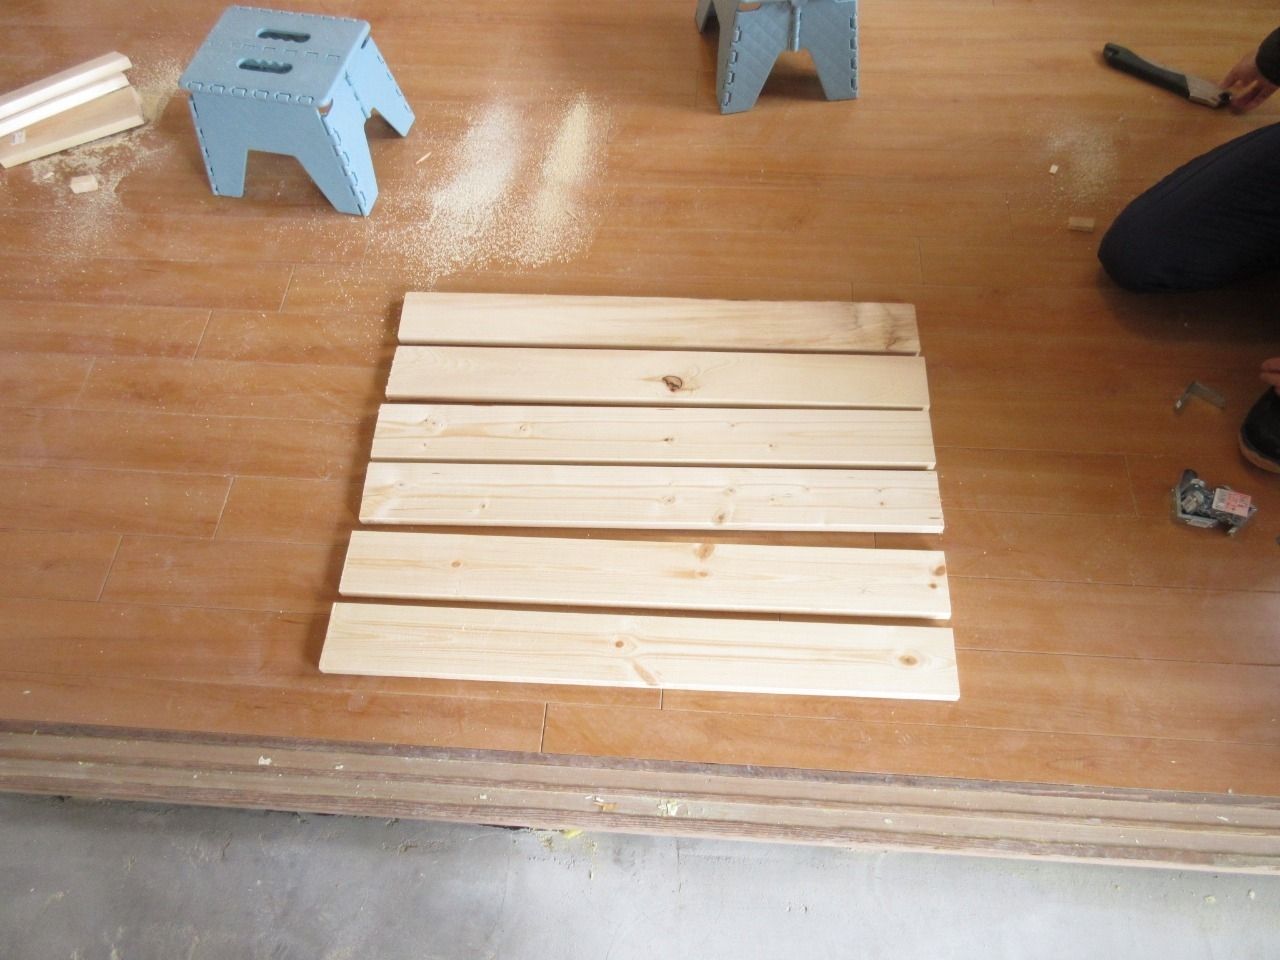 天井の下地となるベニヤ板が中央でたわまないように、1本の木材を入れます。
長手方向の木材間の寸法を測り、それに合わせて木材をカットします。
そして、この木材取り付けるためにＬ型金物を使用しました。